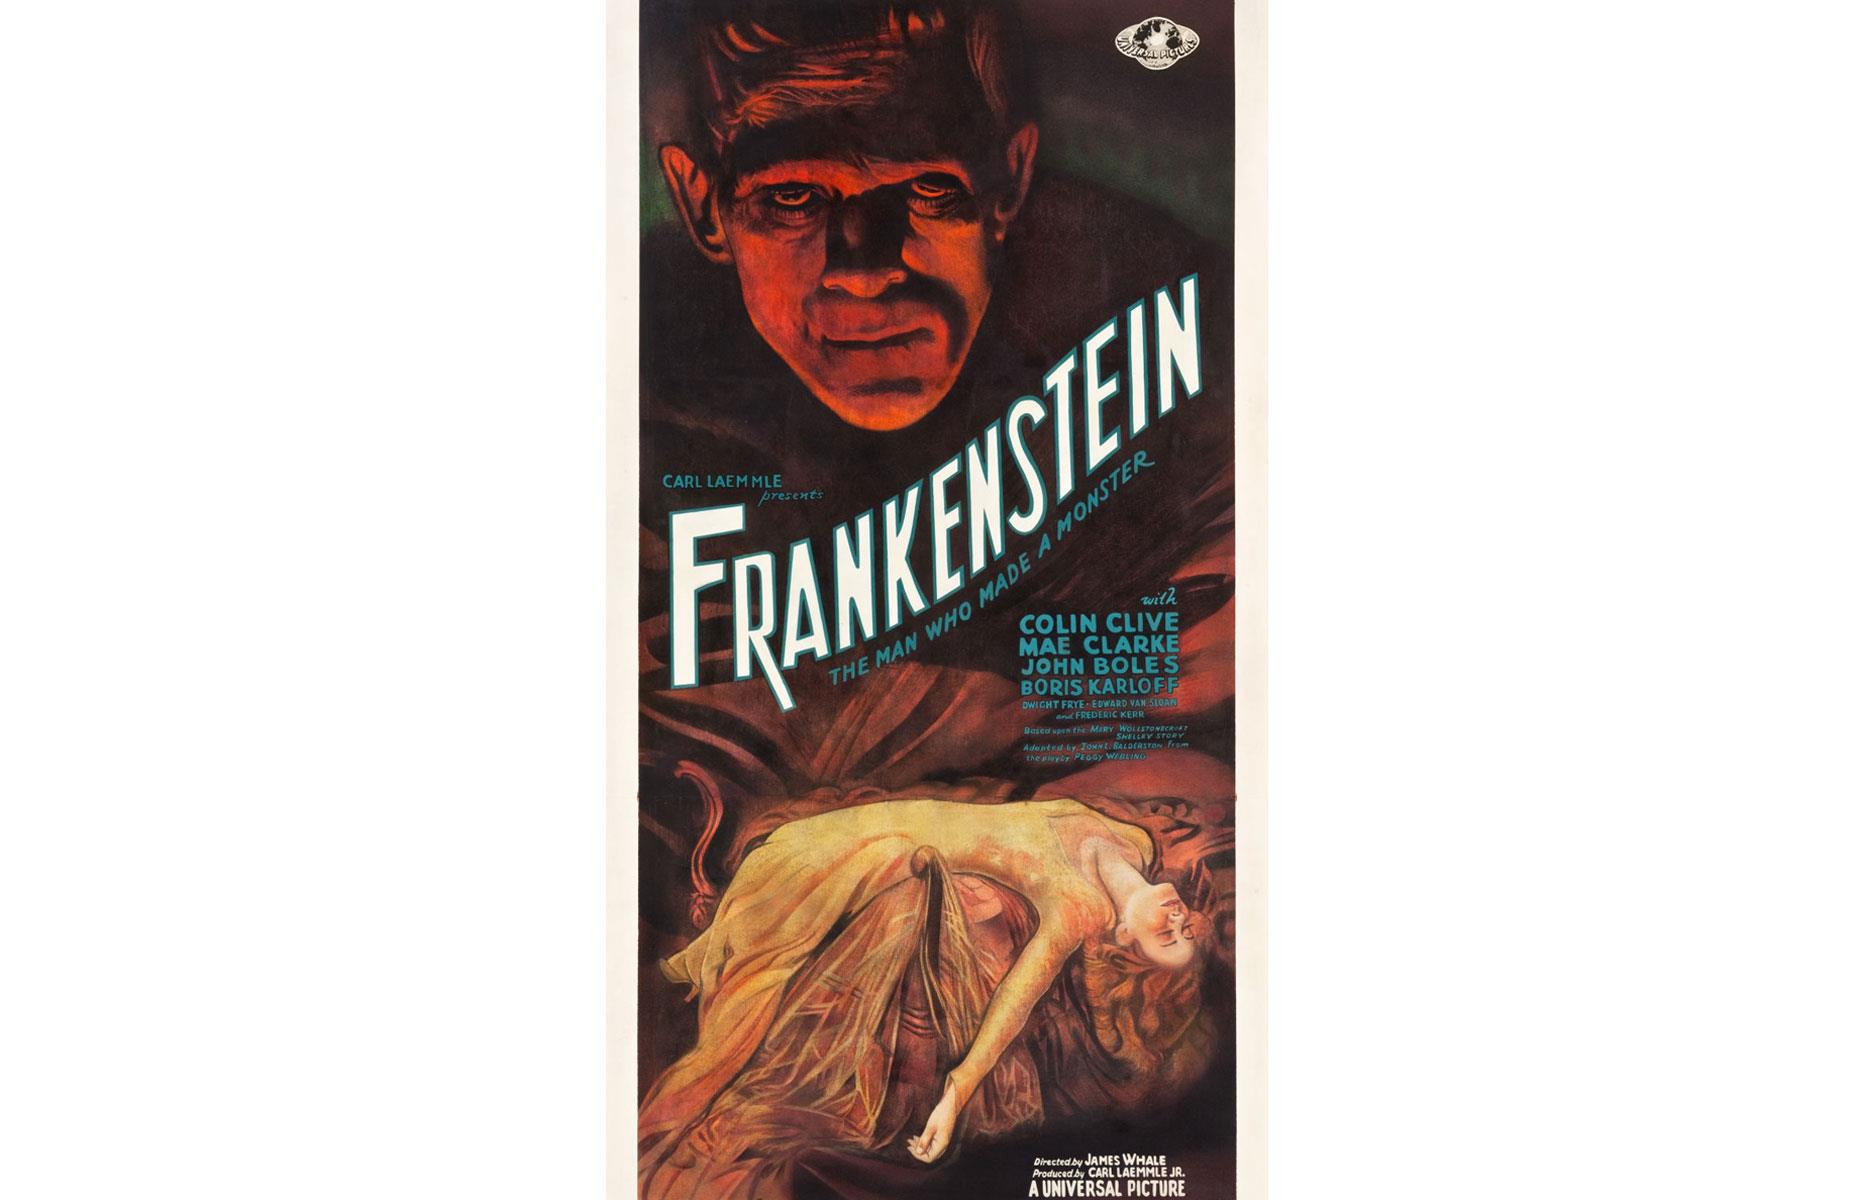 Original Frankenstein 1931 movie poster: $358,500 (£232k)